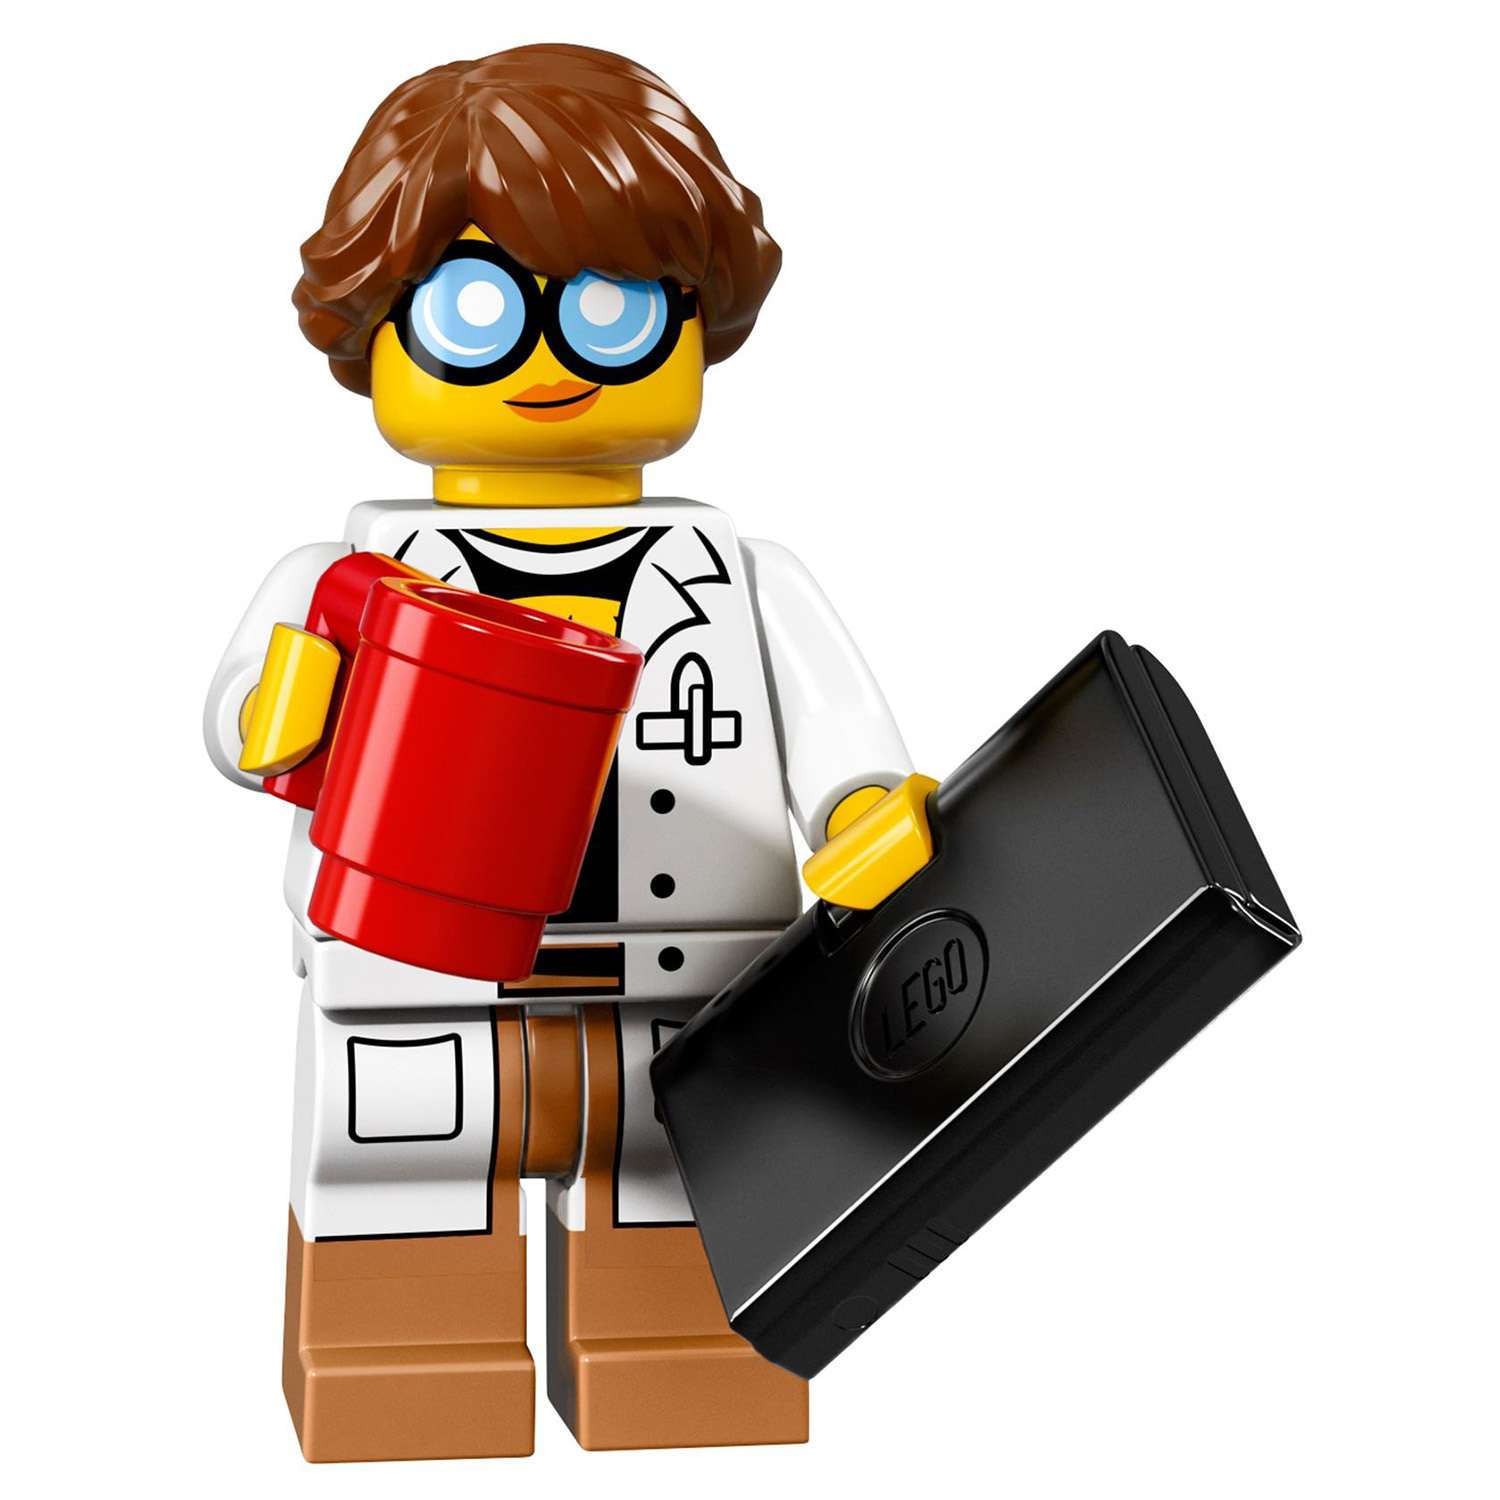 Конструктор LEGO Minifigures Минифигурки ФИЛЬМ: НИНДЗЯГО (71019) в ассортименте - фото 39